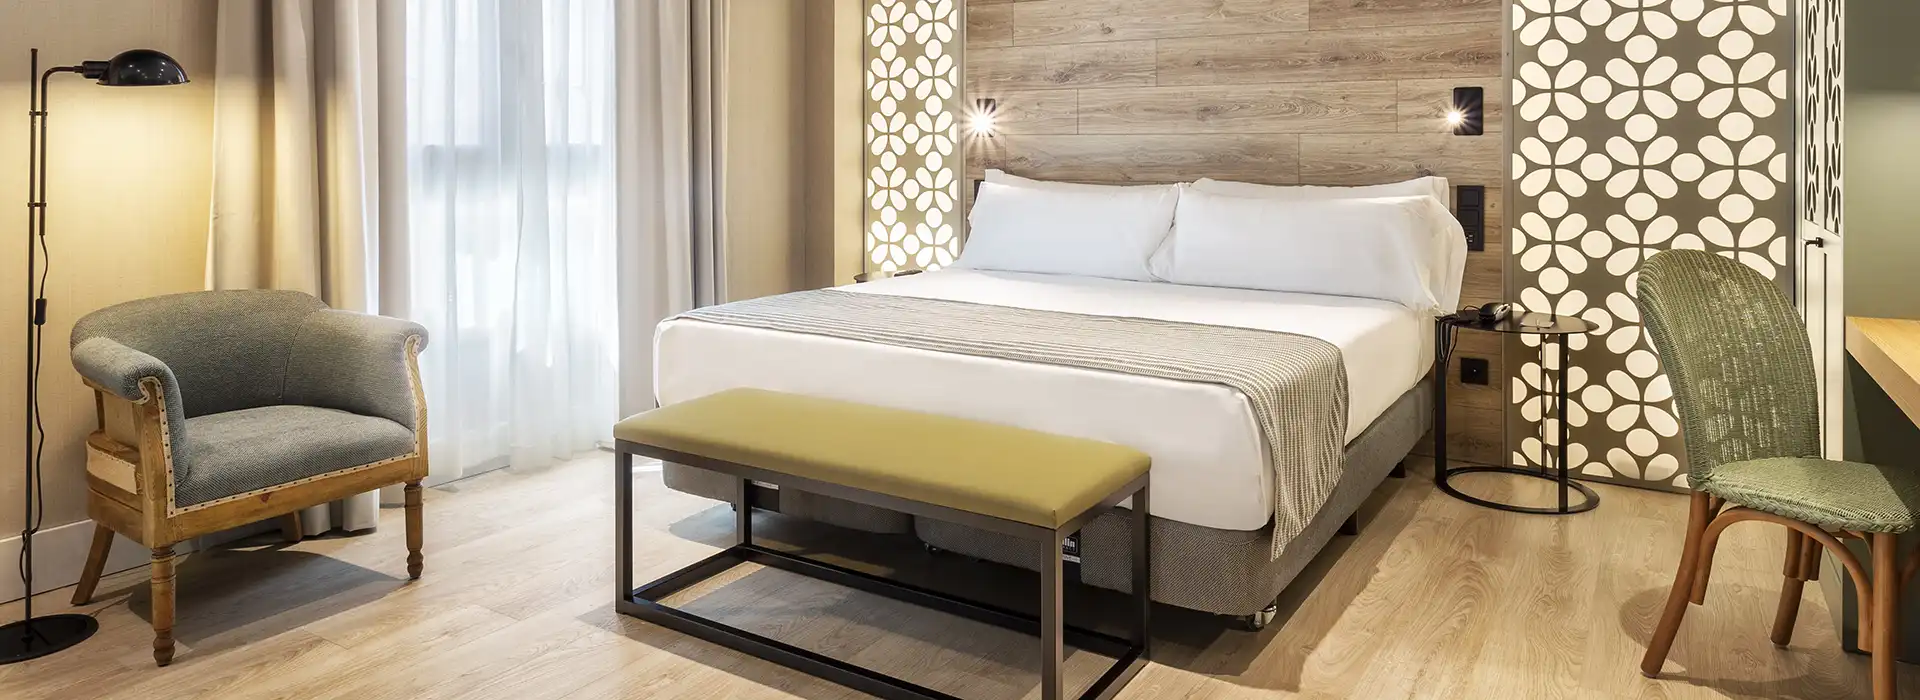 Suite de hotel con textiles en cortinas, butacas y ropa de cama.